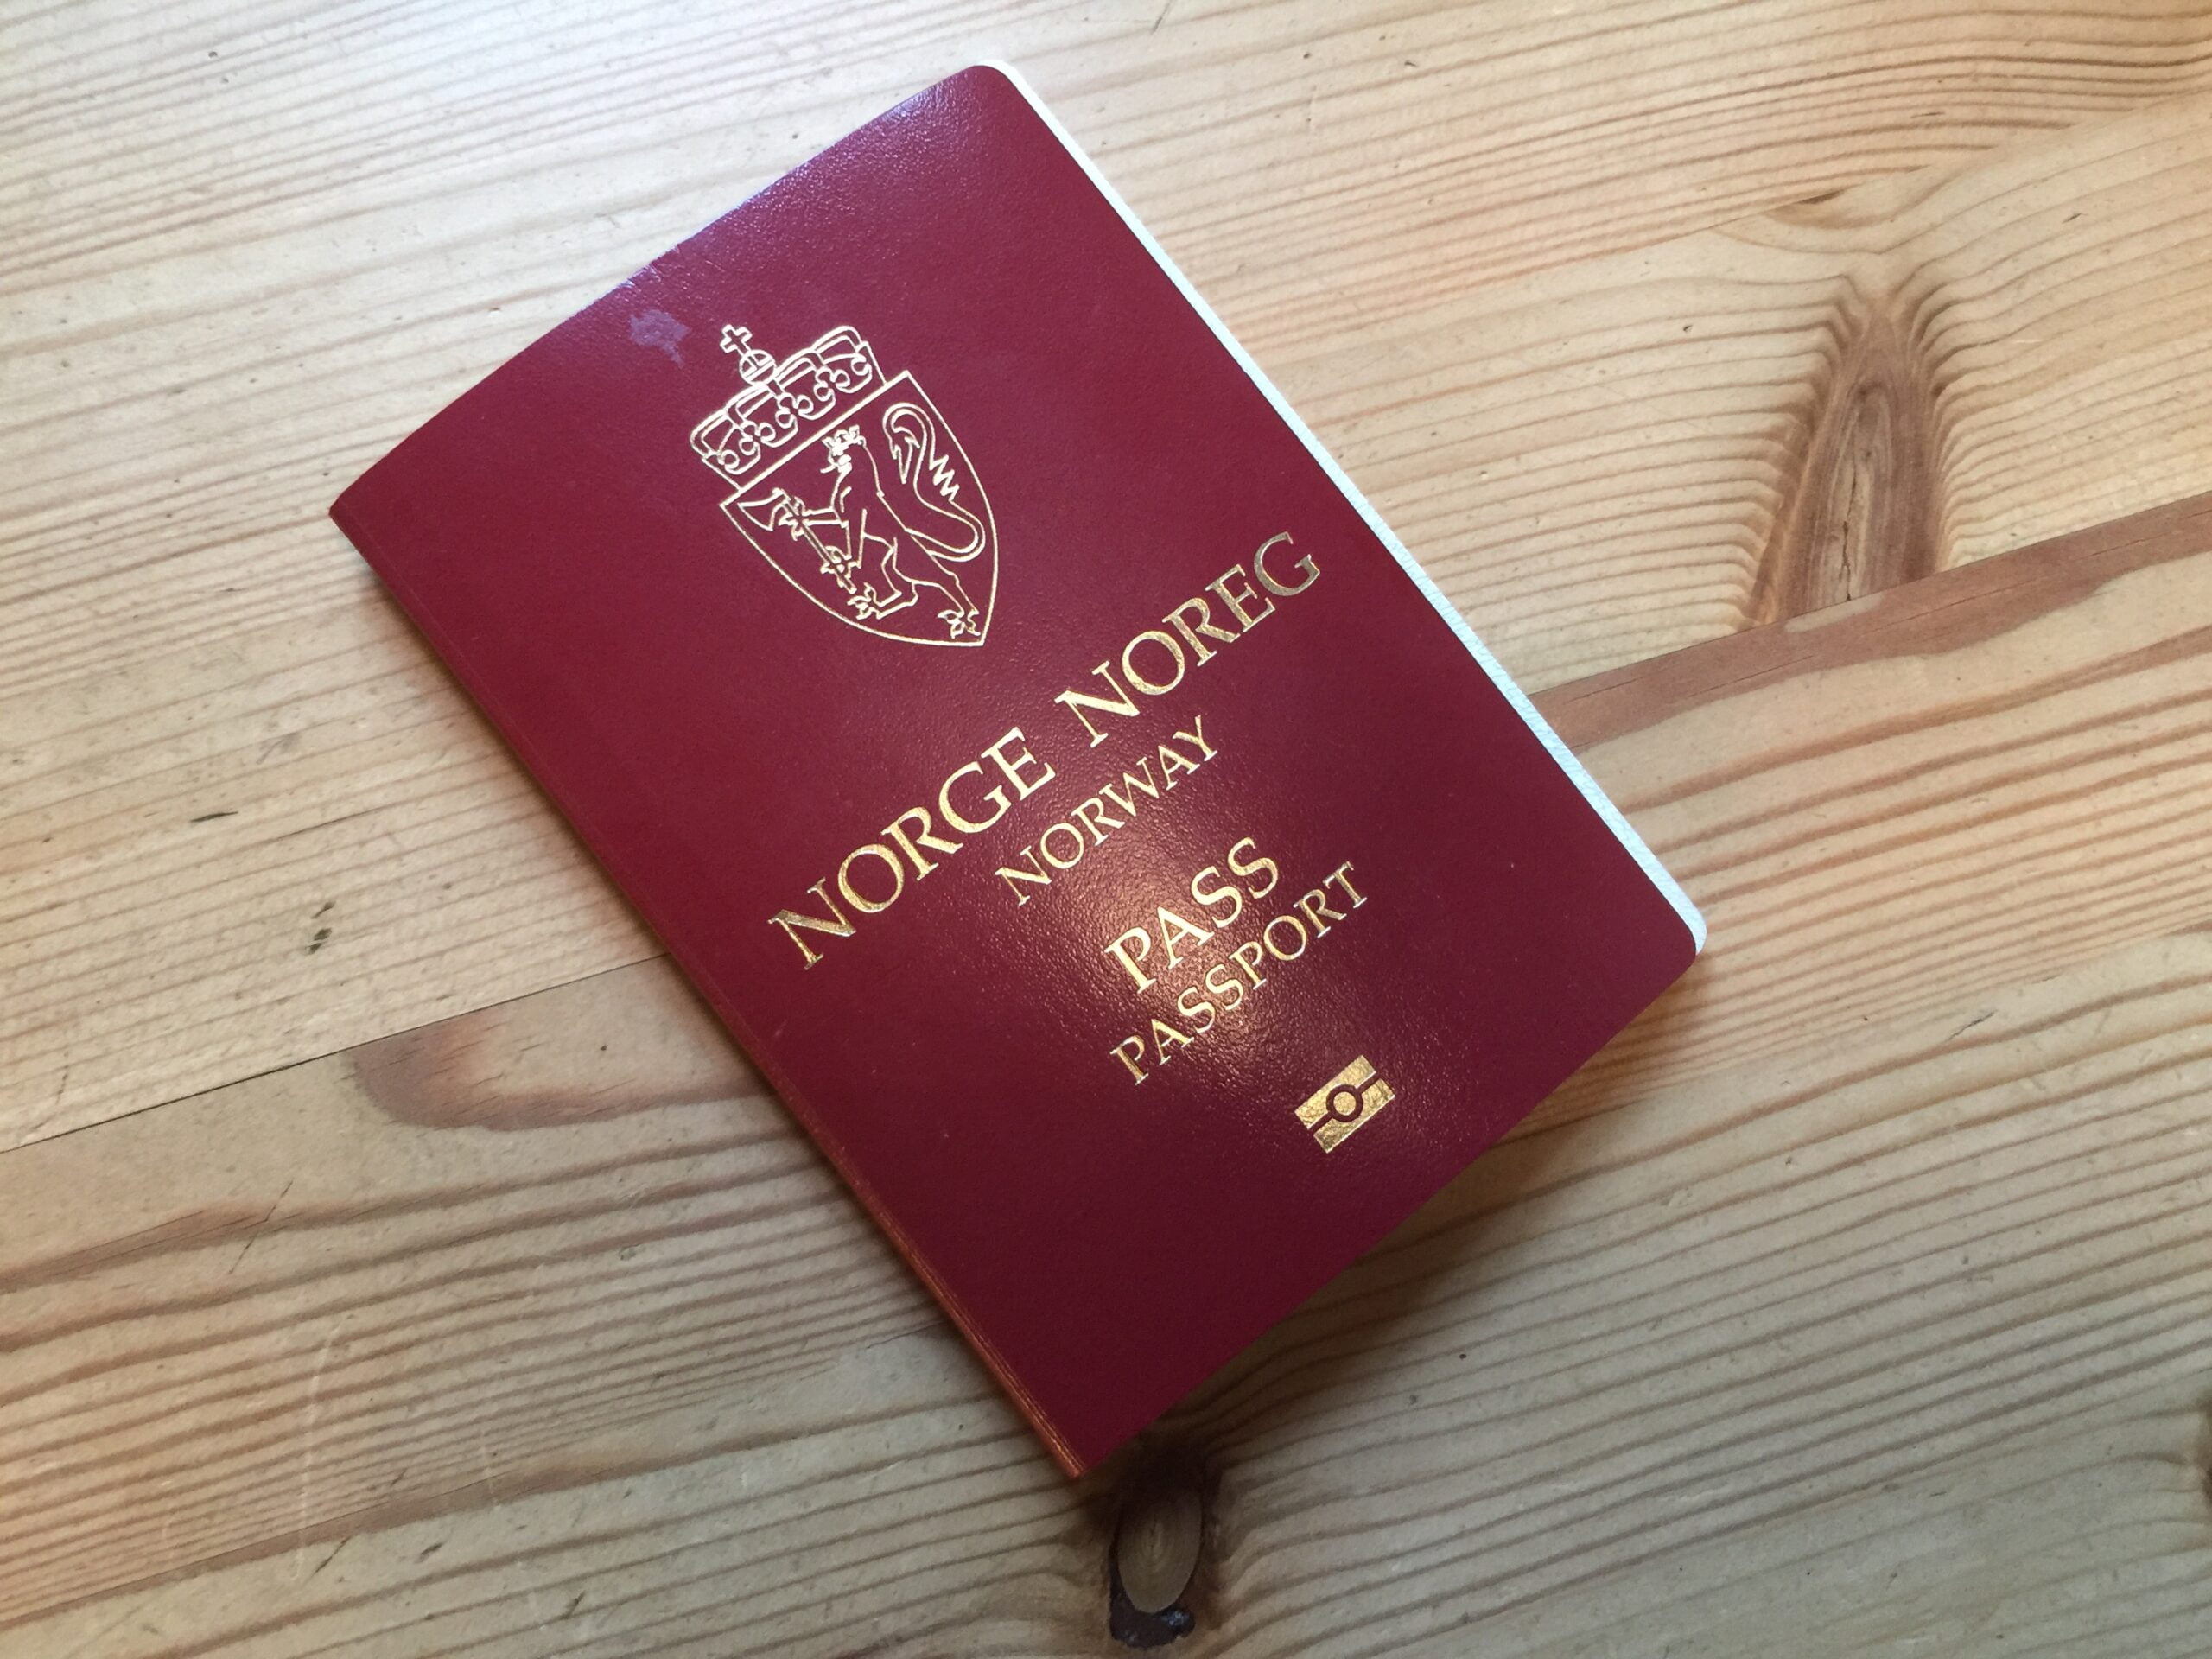 Anundsen envisage d'envoyer des passeports par coursier - 3